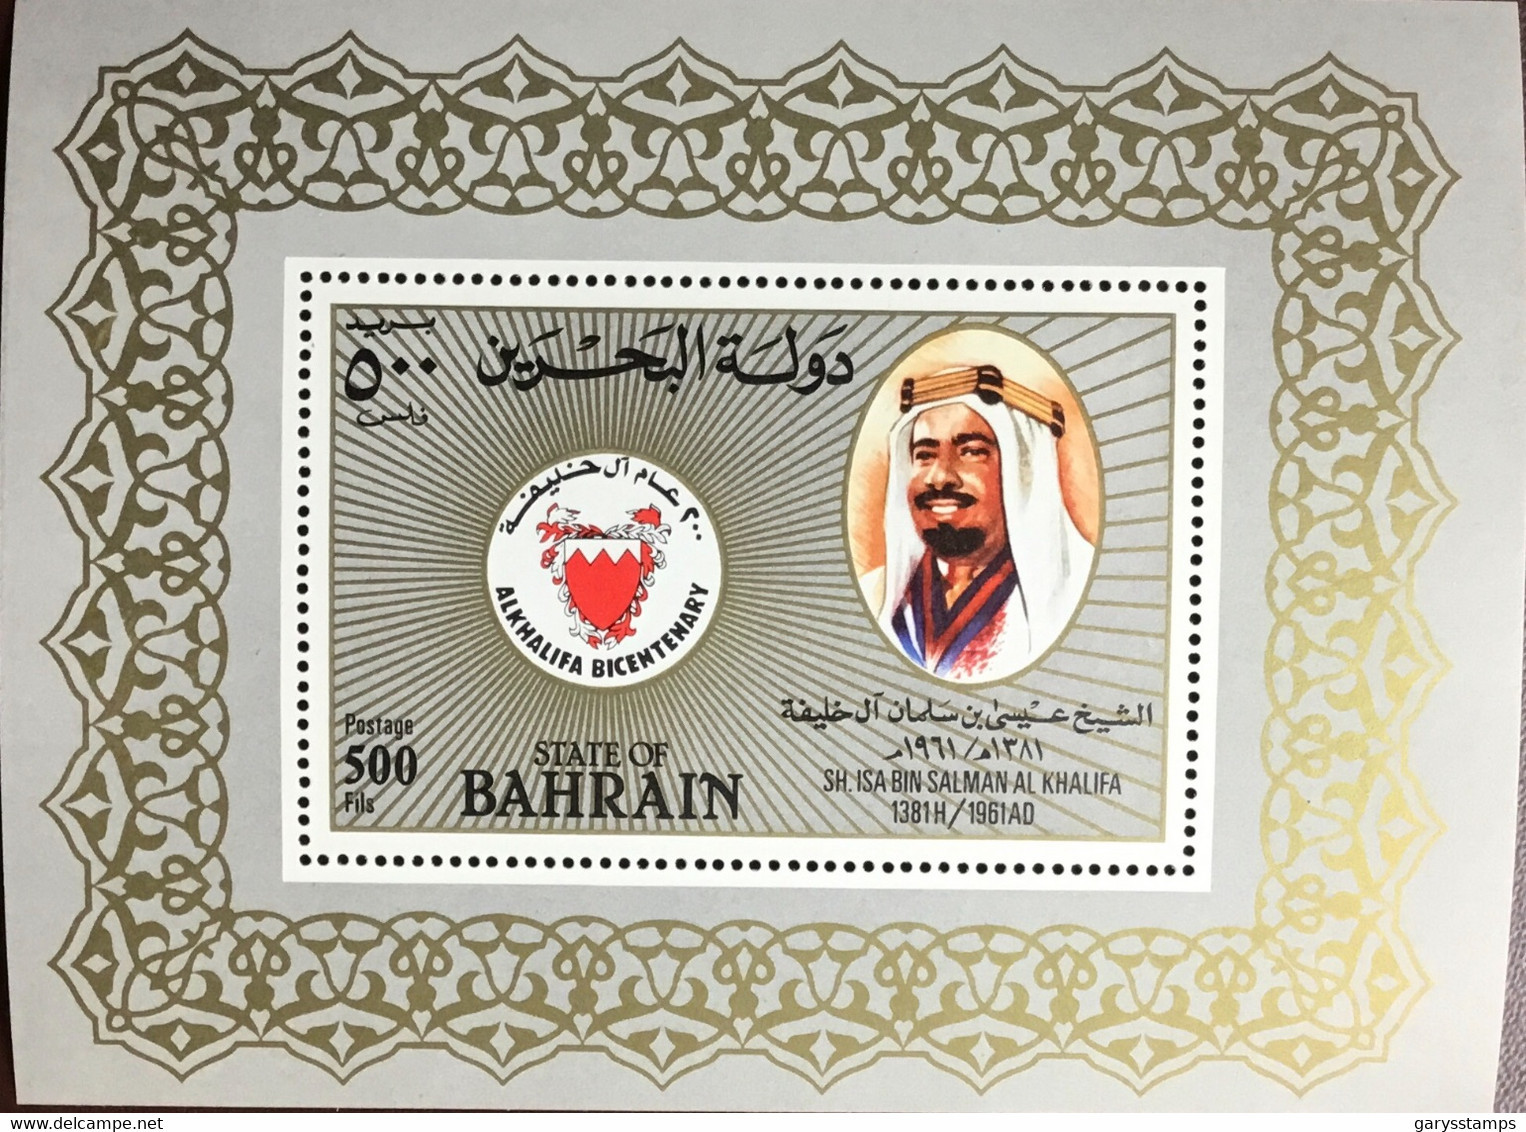 Bahrain 1983 Al-Khalifa Dynasty Minisheet MNH - Bahrain (1965-...)